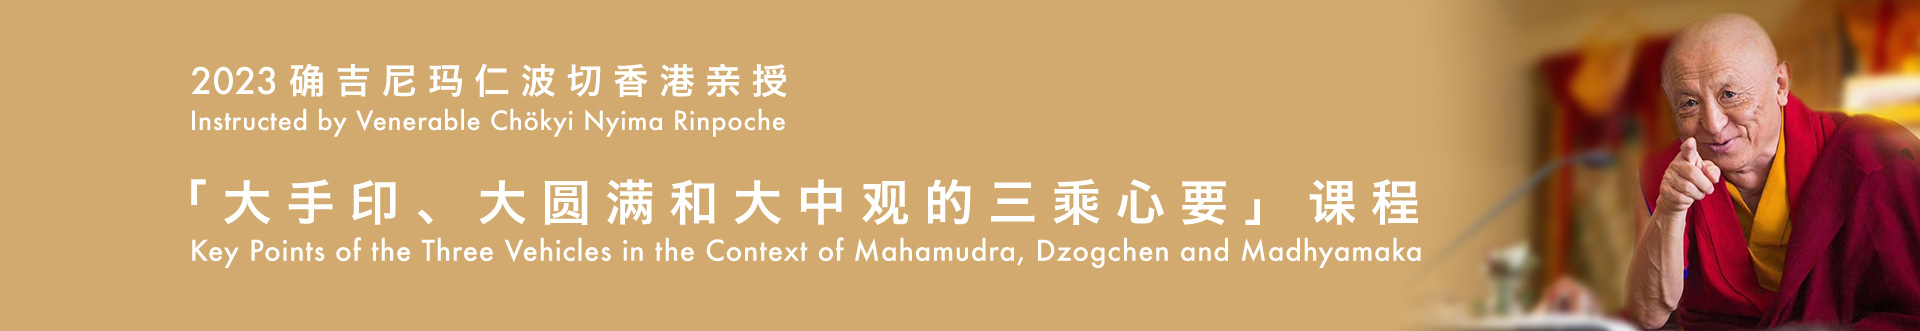 2023確吉尼瑪仁波切香港親授「大手印、大圓滿和大中觀的三乘心要」課程